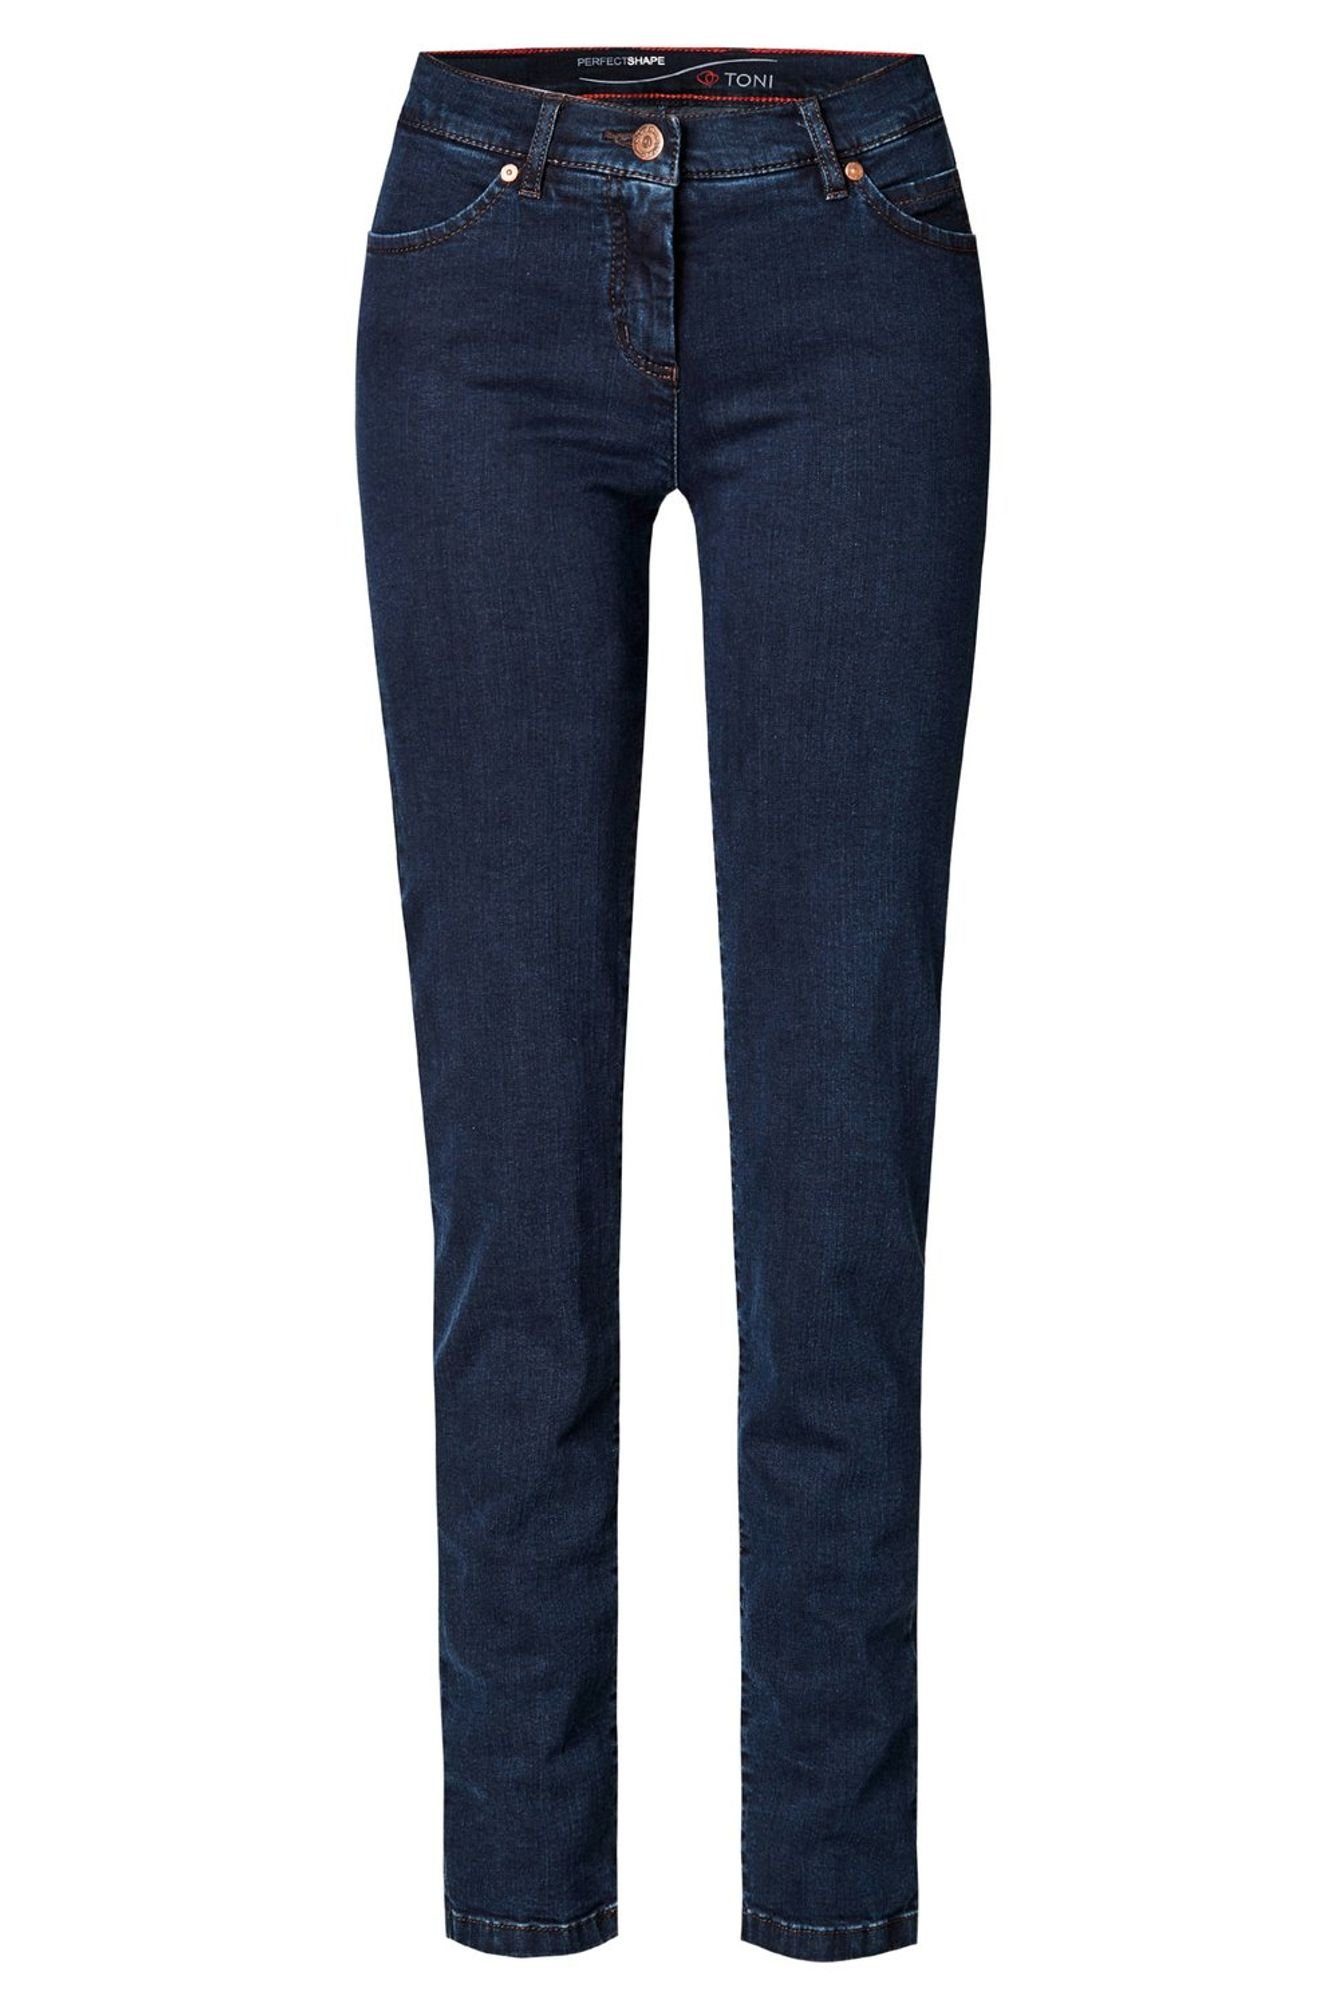 TONI 5-Pocket-Jeans 12-04 1106 5-Pocket-Design Dark Blue (059)